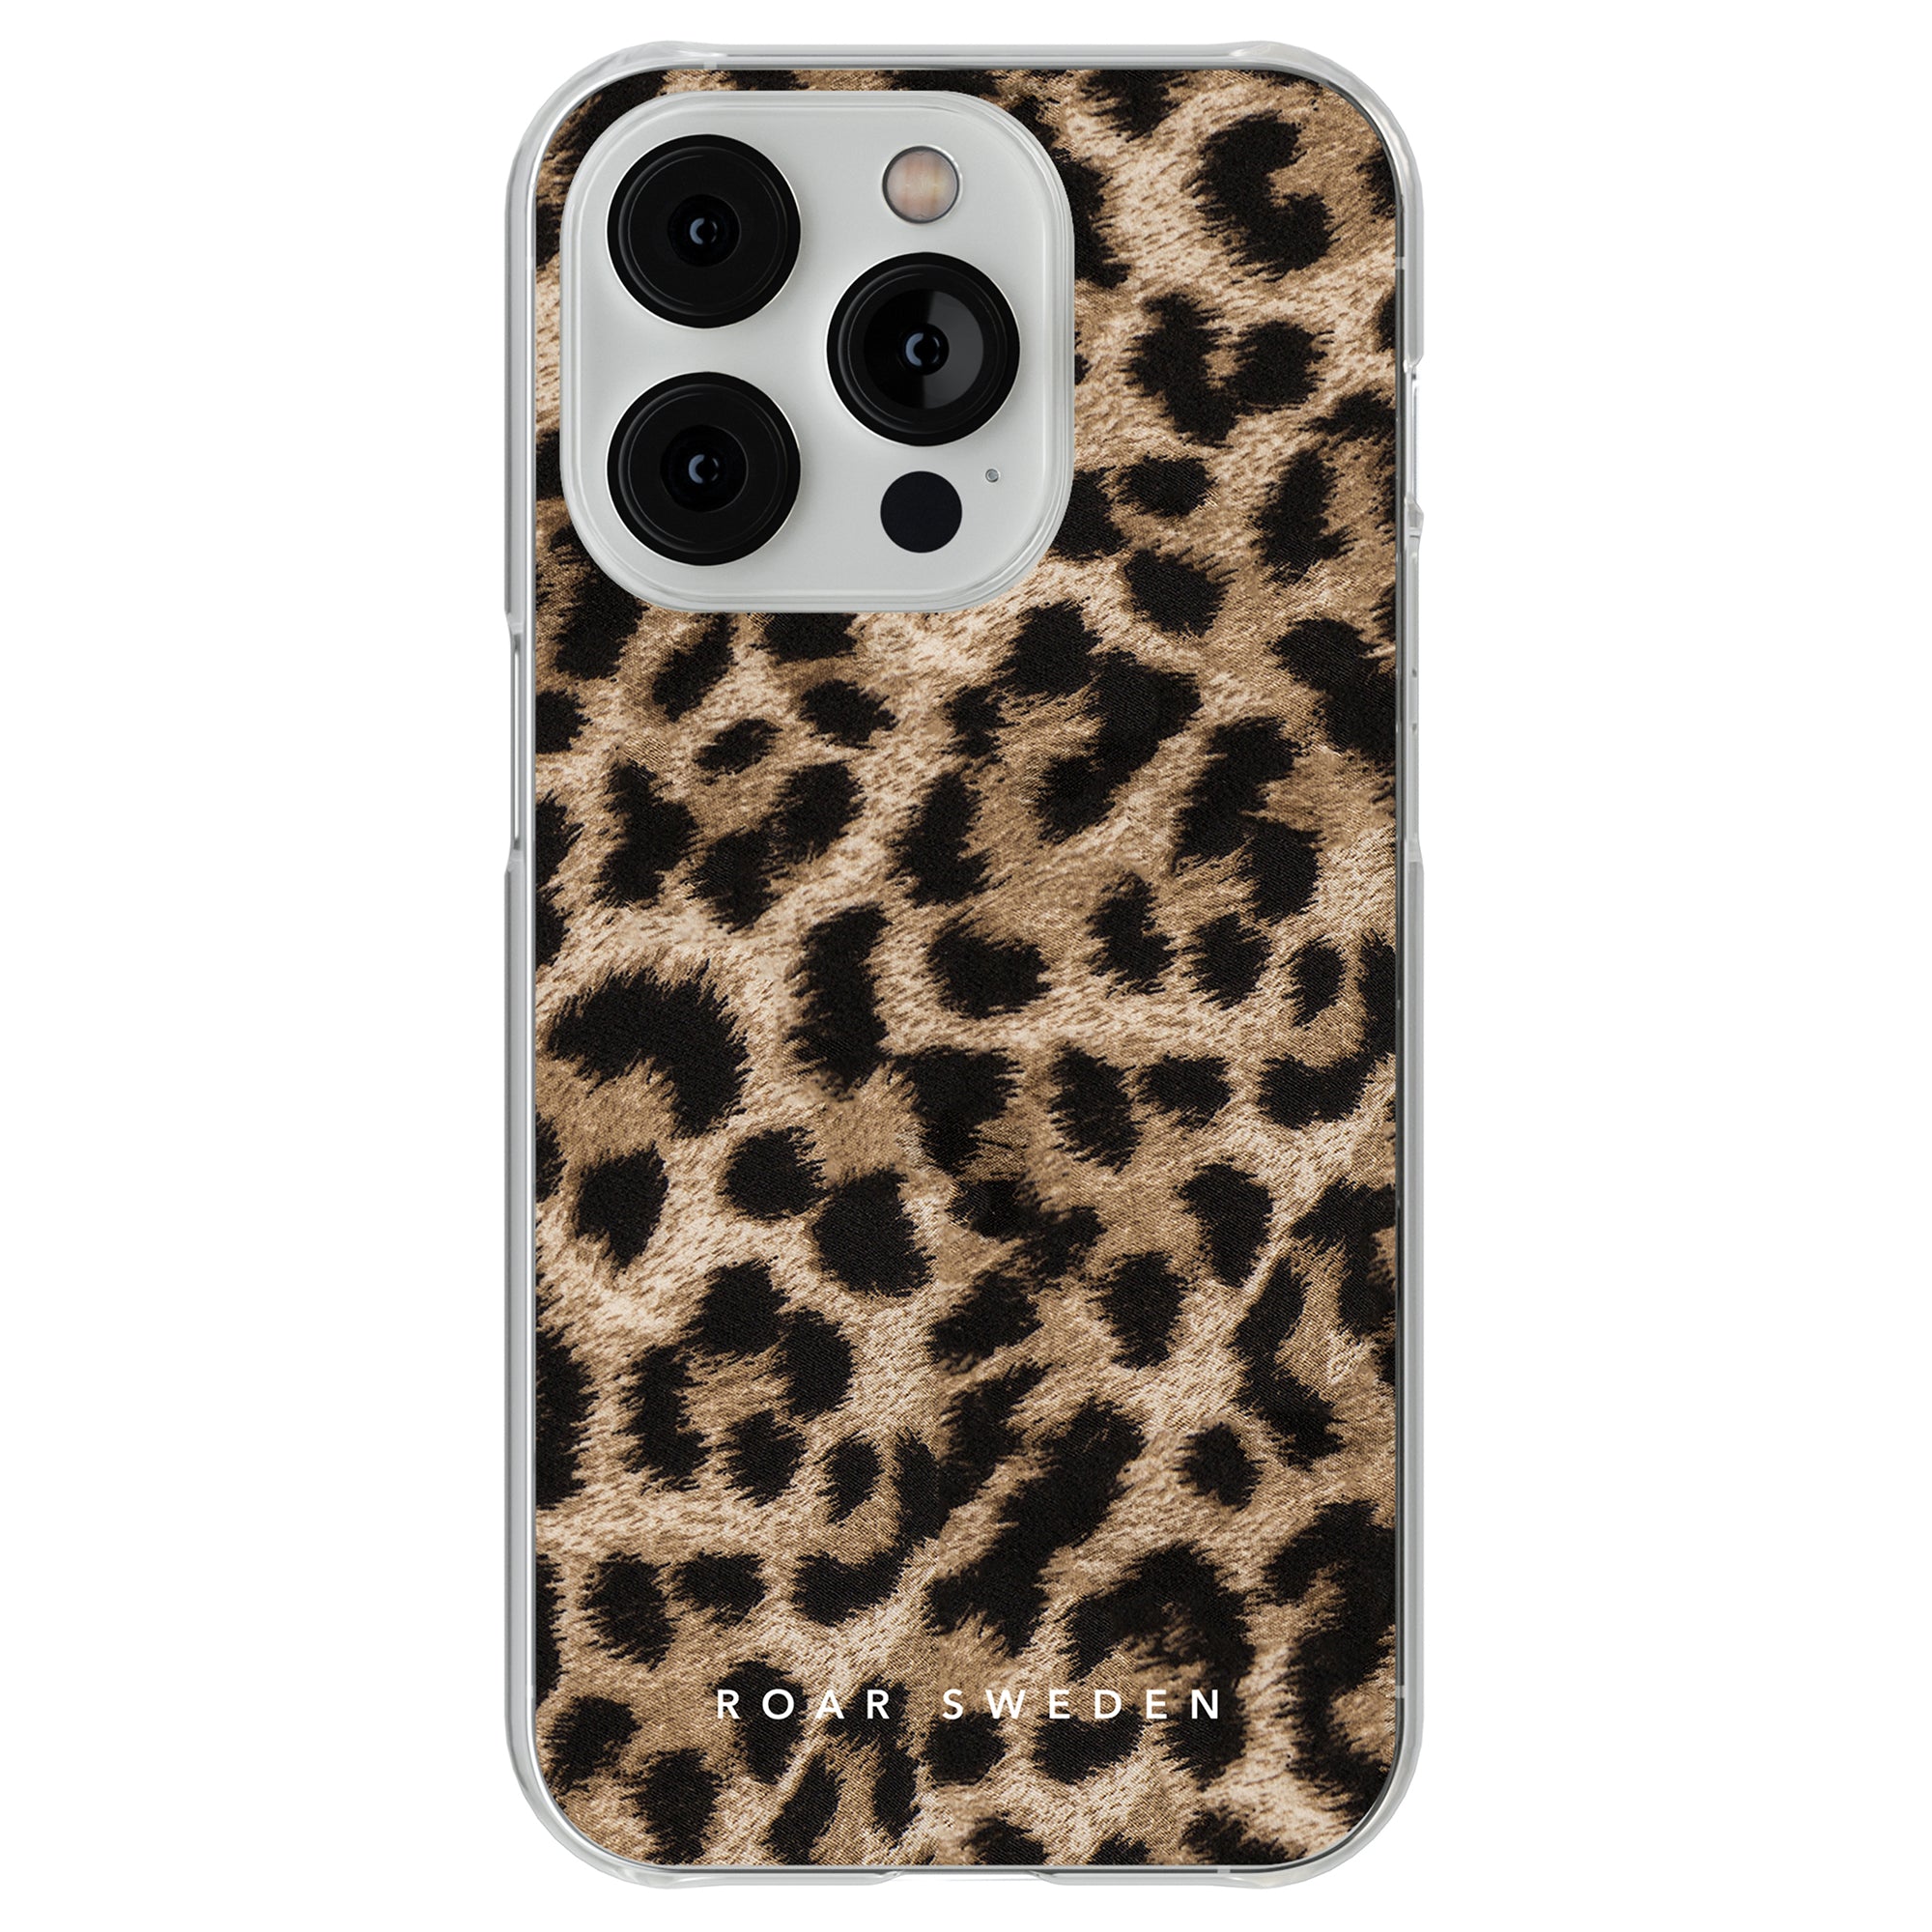 Ett robust leopard - genomskinligt fodral mobilskal för iPhone 11.